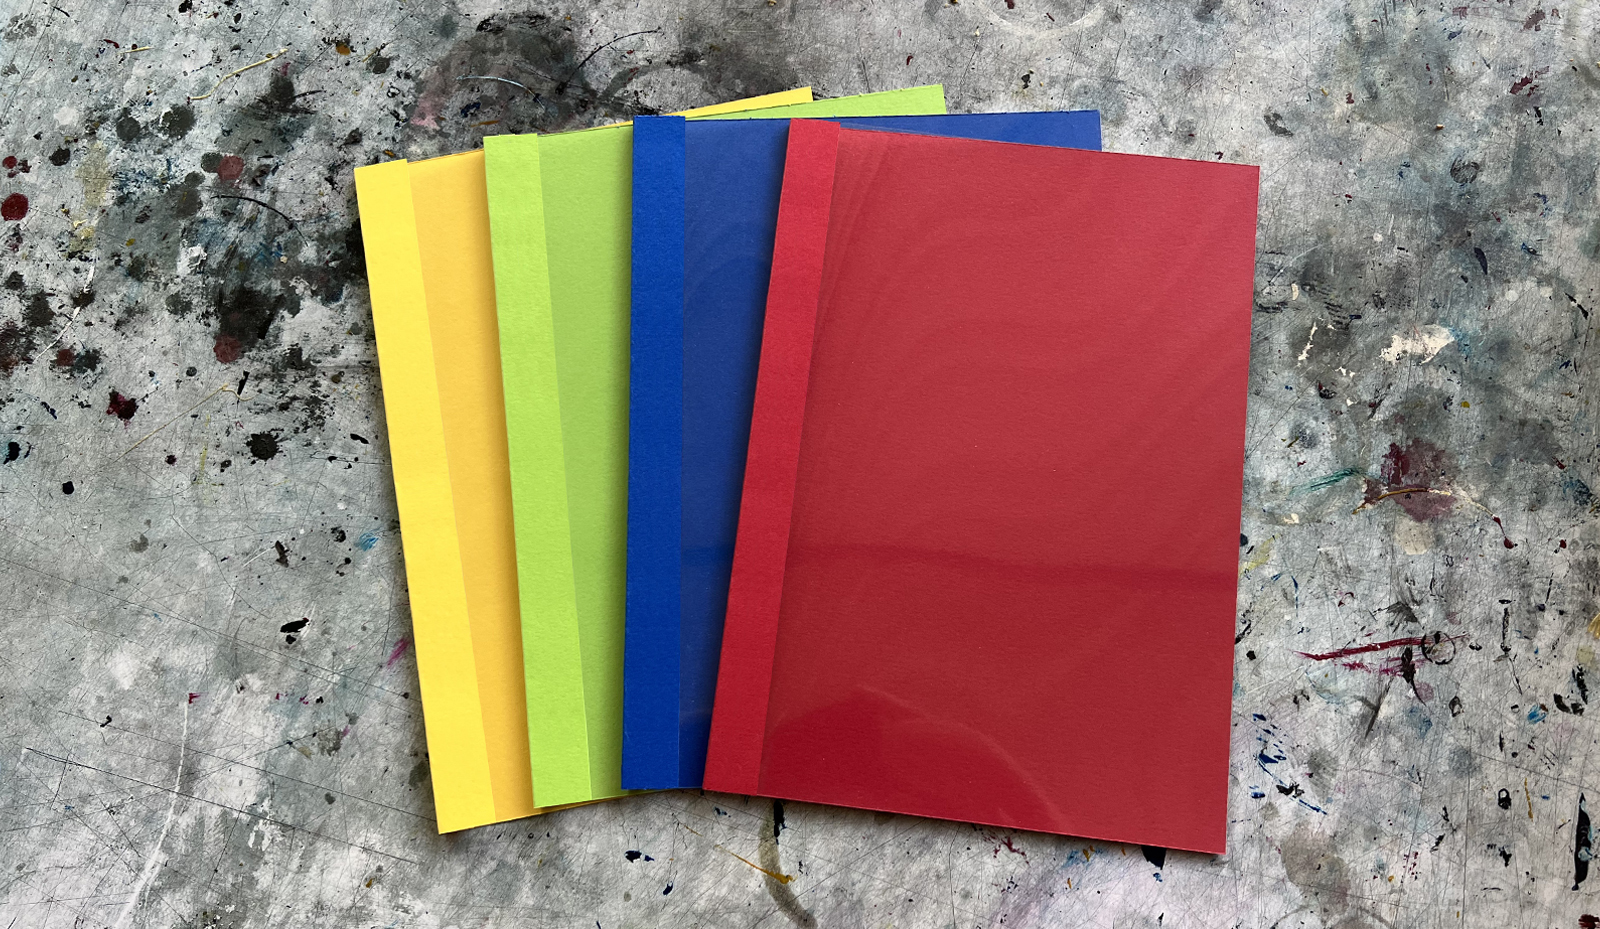 Klarsichtmappe aus Karton in verschiedenen Farben